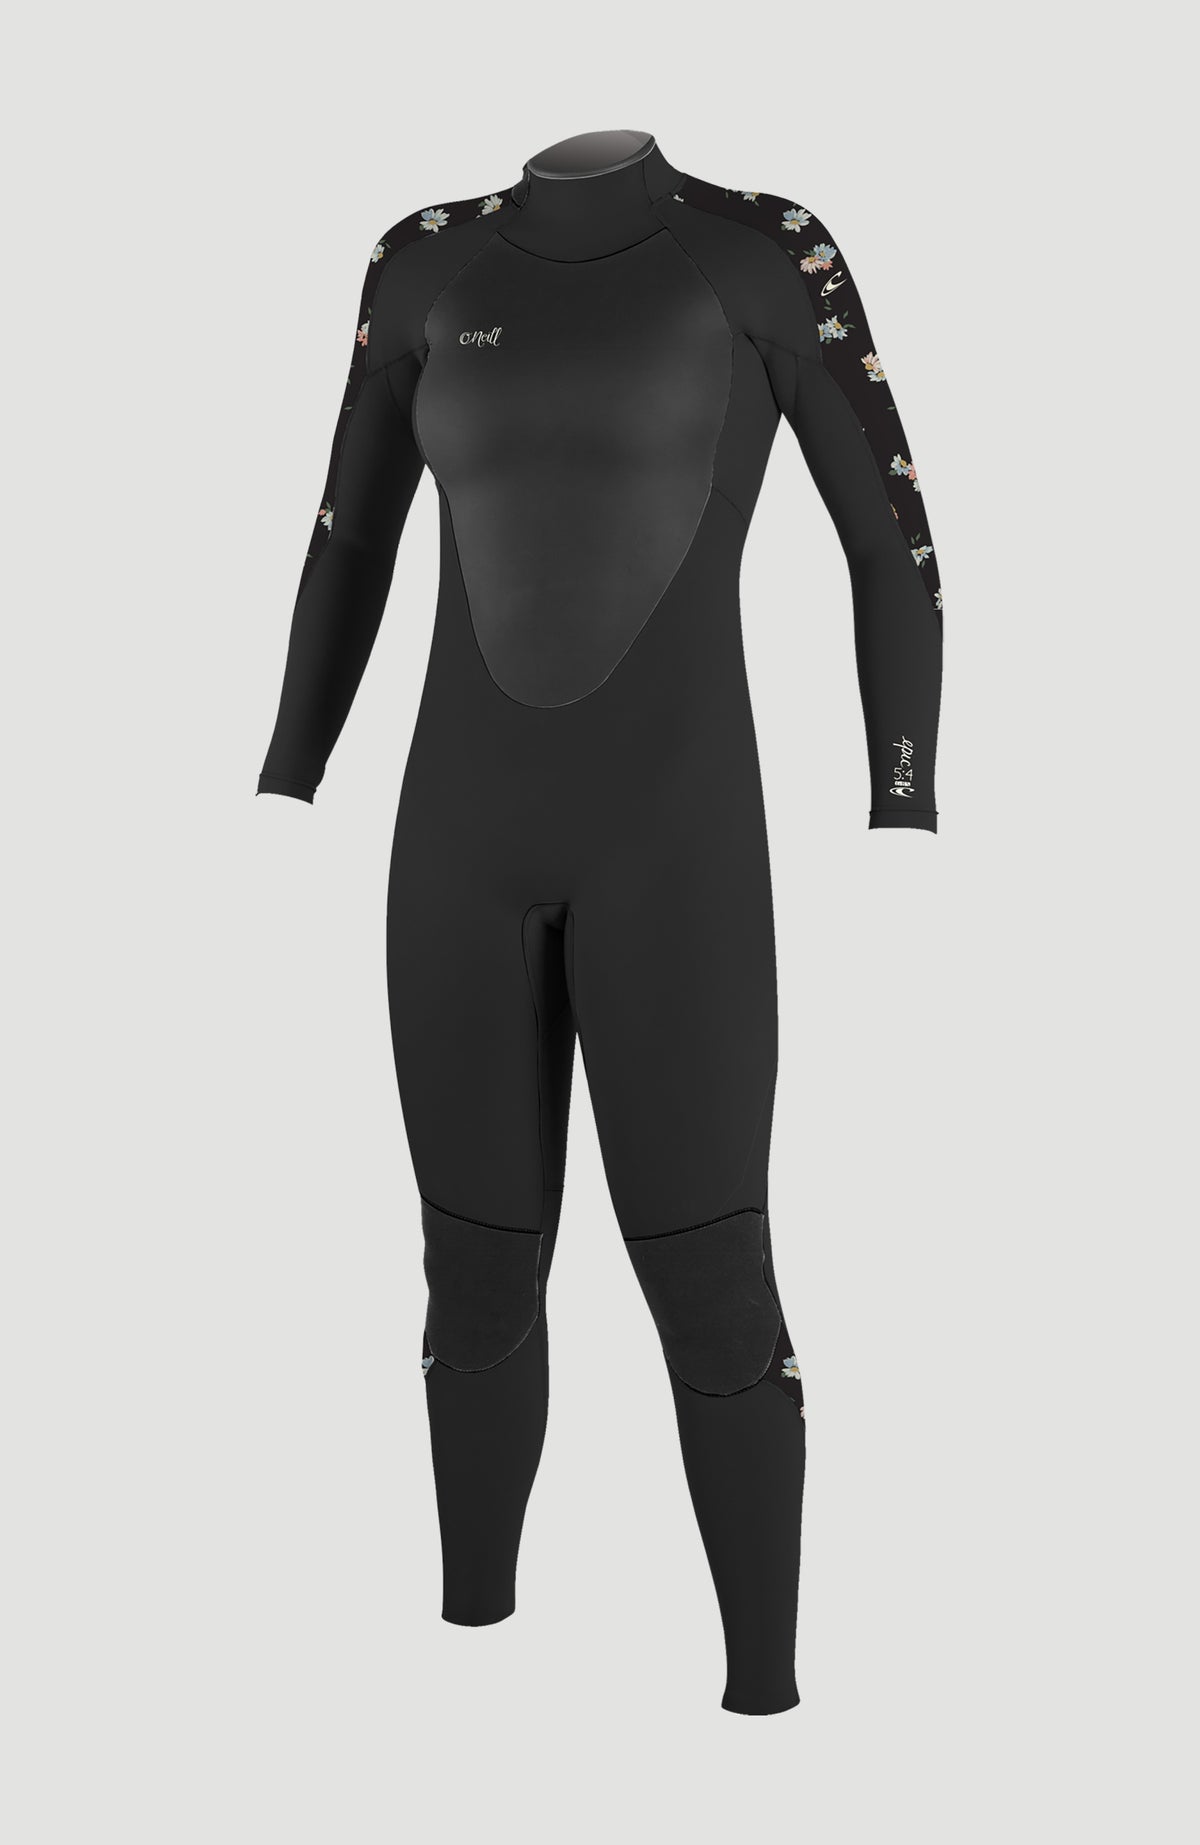  HIGI Flexel Full Wetsuit for Women,2mm Womens Wet Wuit